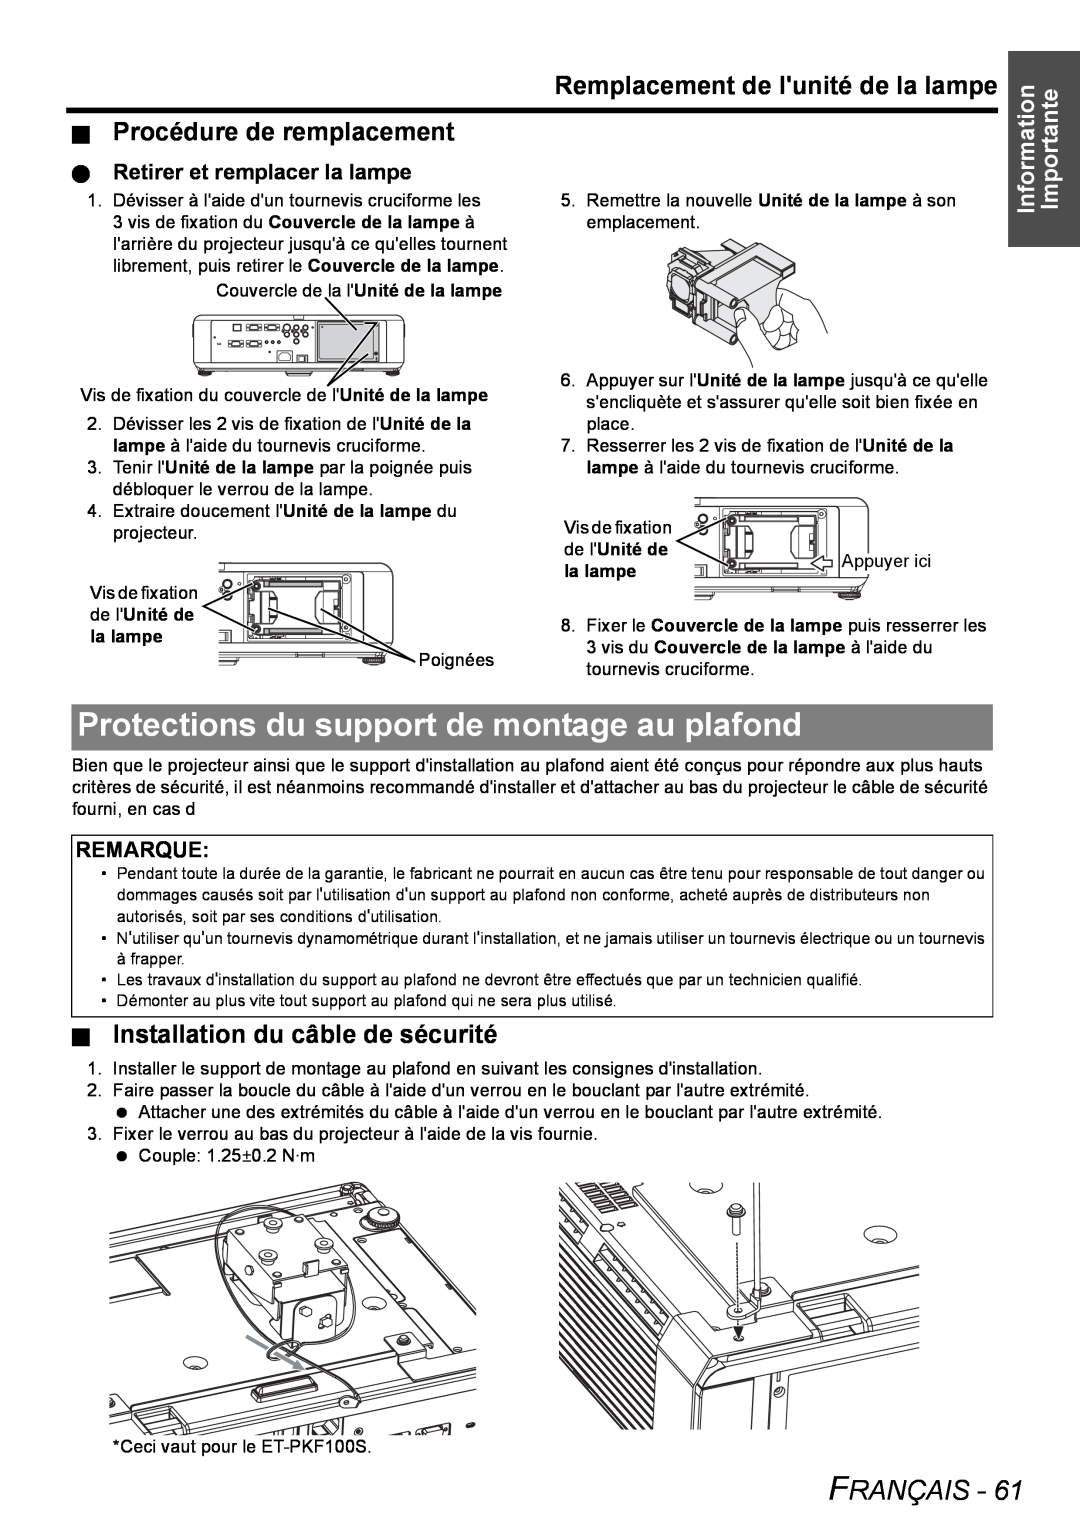 Panasonic PT-FW100NTU Protections du support de montage au plafond, Installation du câble de sécurité, Français, Remarque 